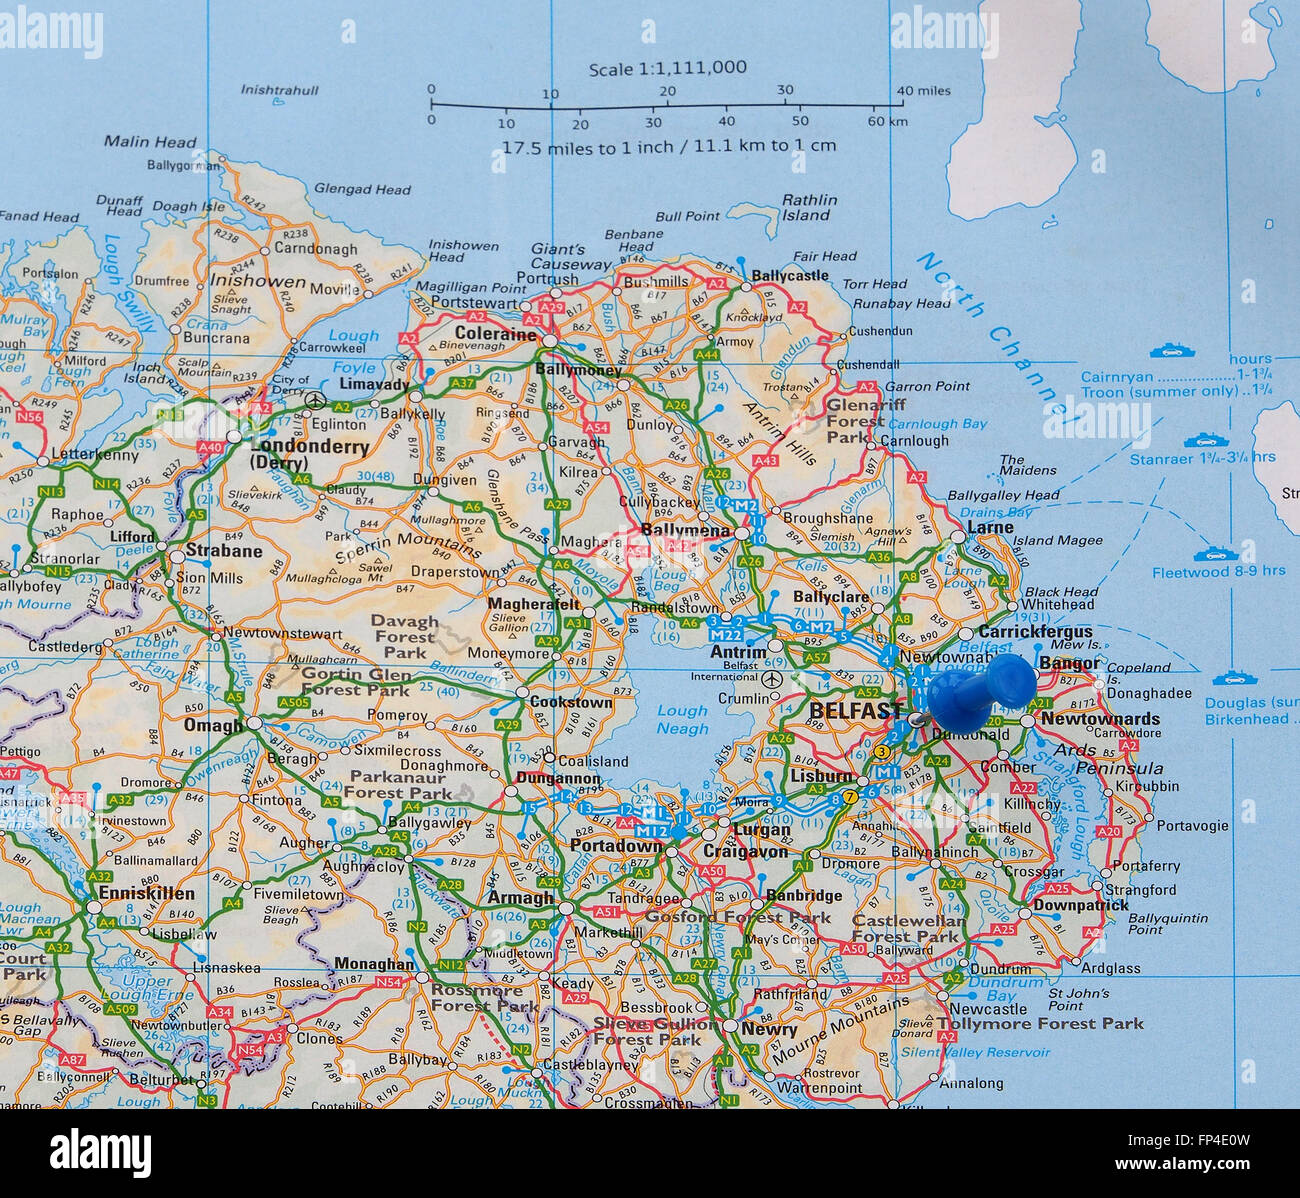 Mapa de carreteras de Irlanda del Norte, con un mapa indicando pin de Belfast, en el Condado de Antrim, la capital de Irlanda del Norte. Foto de stock